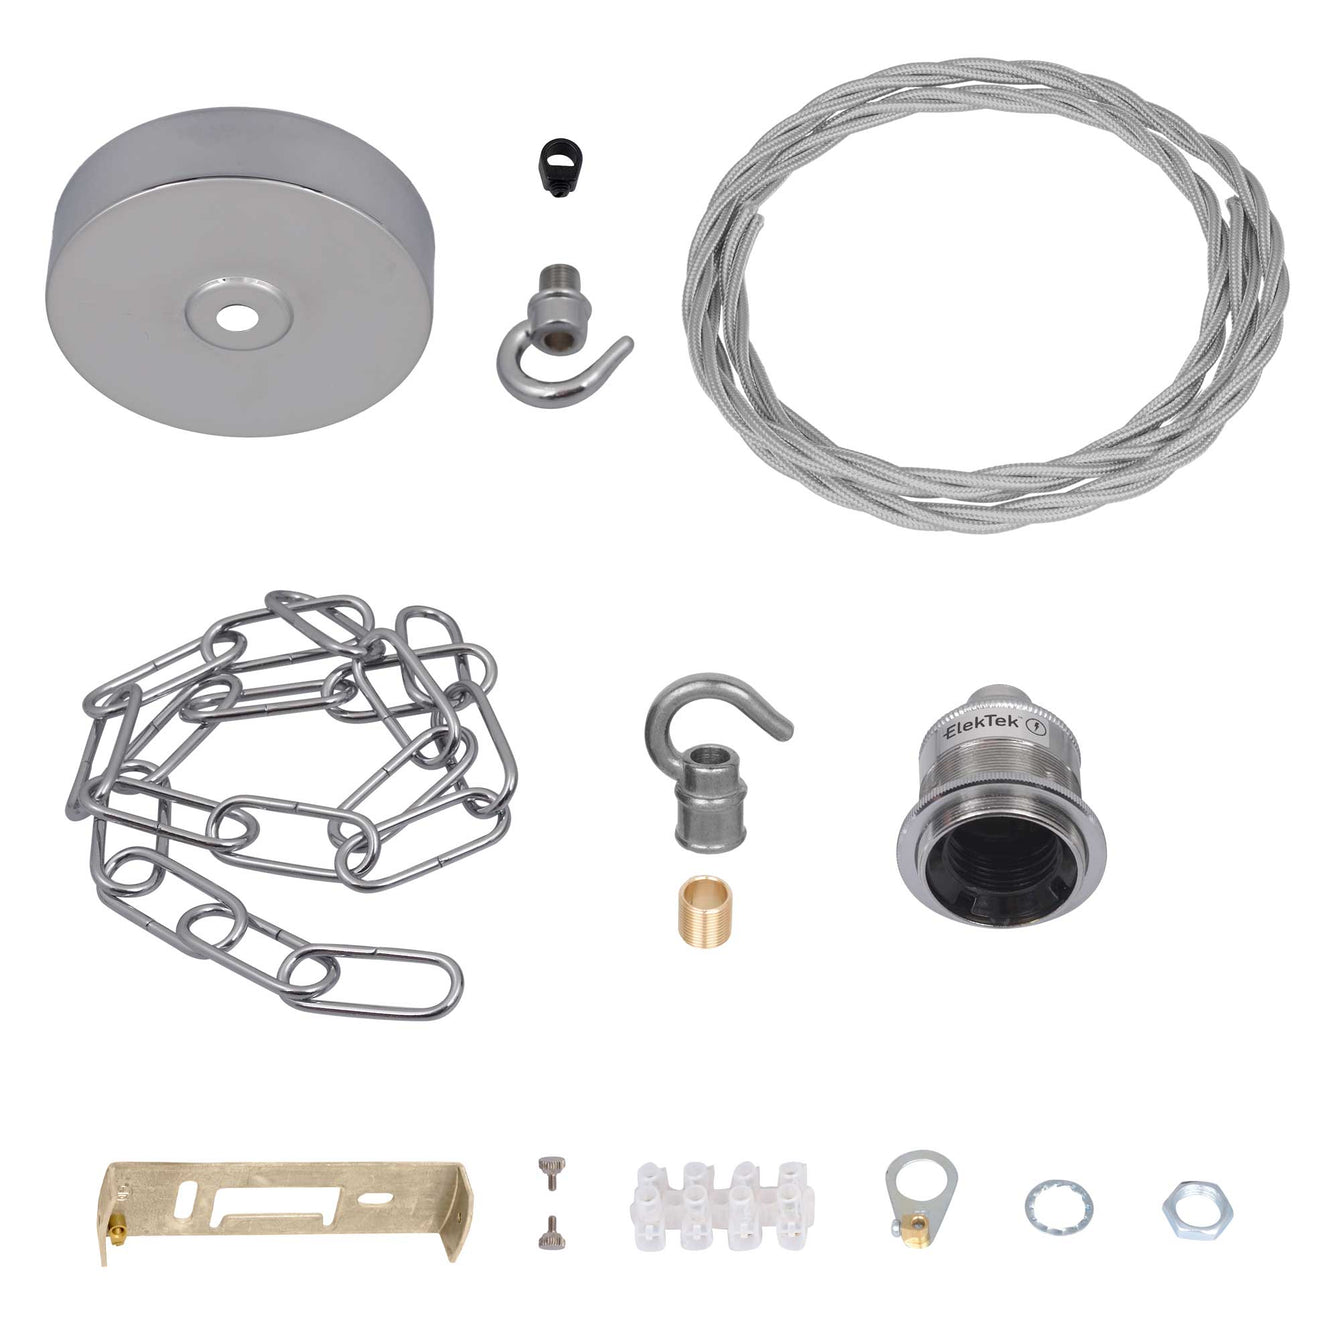 ElekTek Premium Pendant Light Kit DIY 100mm Flat Top Ceiling Rose, Chain, Twisted Flex and Lamp Holder E27 Shade Ring Hook - Buy It Better 